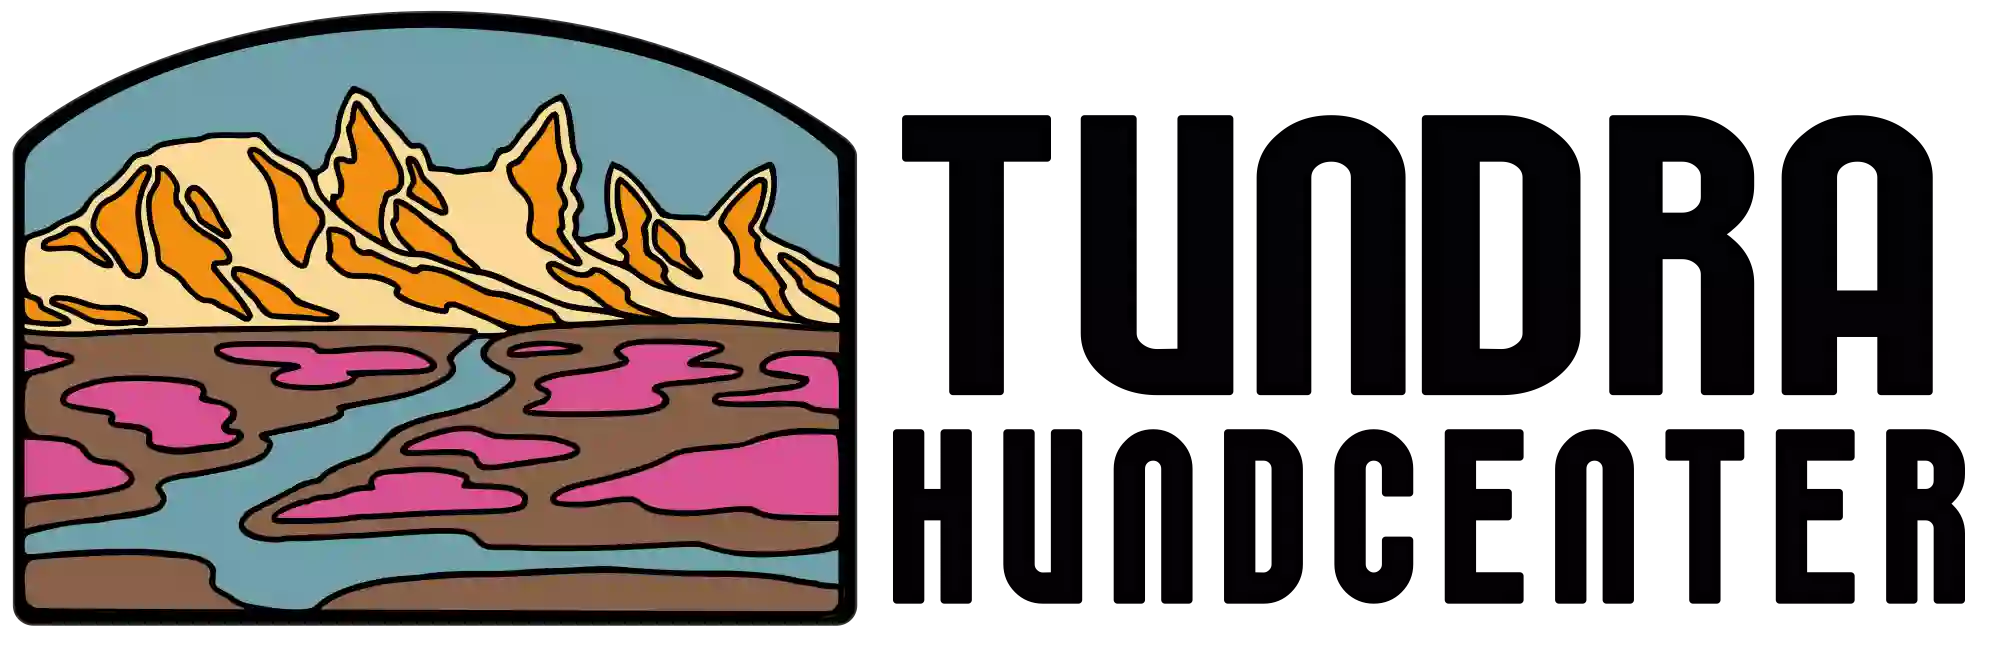 Logga för Tundra Hundcenter – berg som er ut som hundhuvuden och en älv i färgerna brun, cyan och magenta.